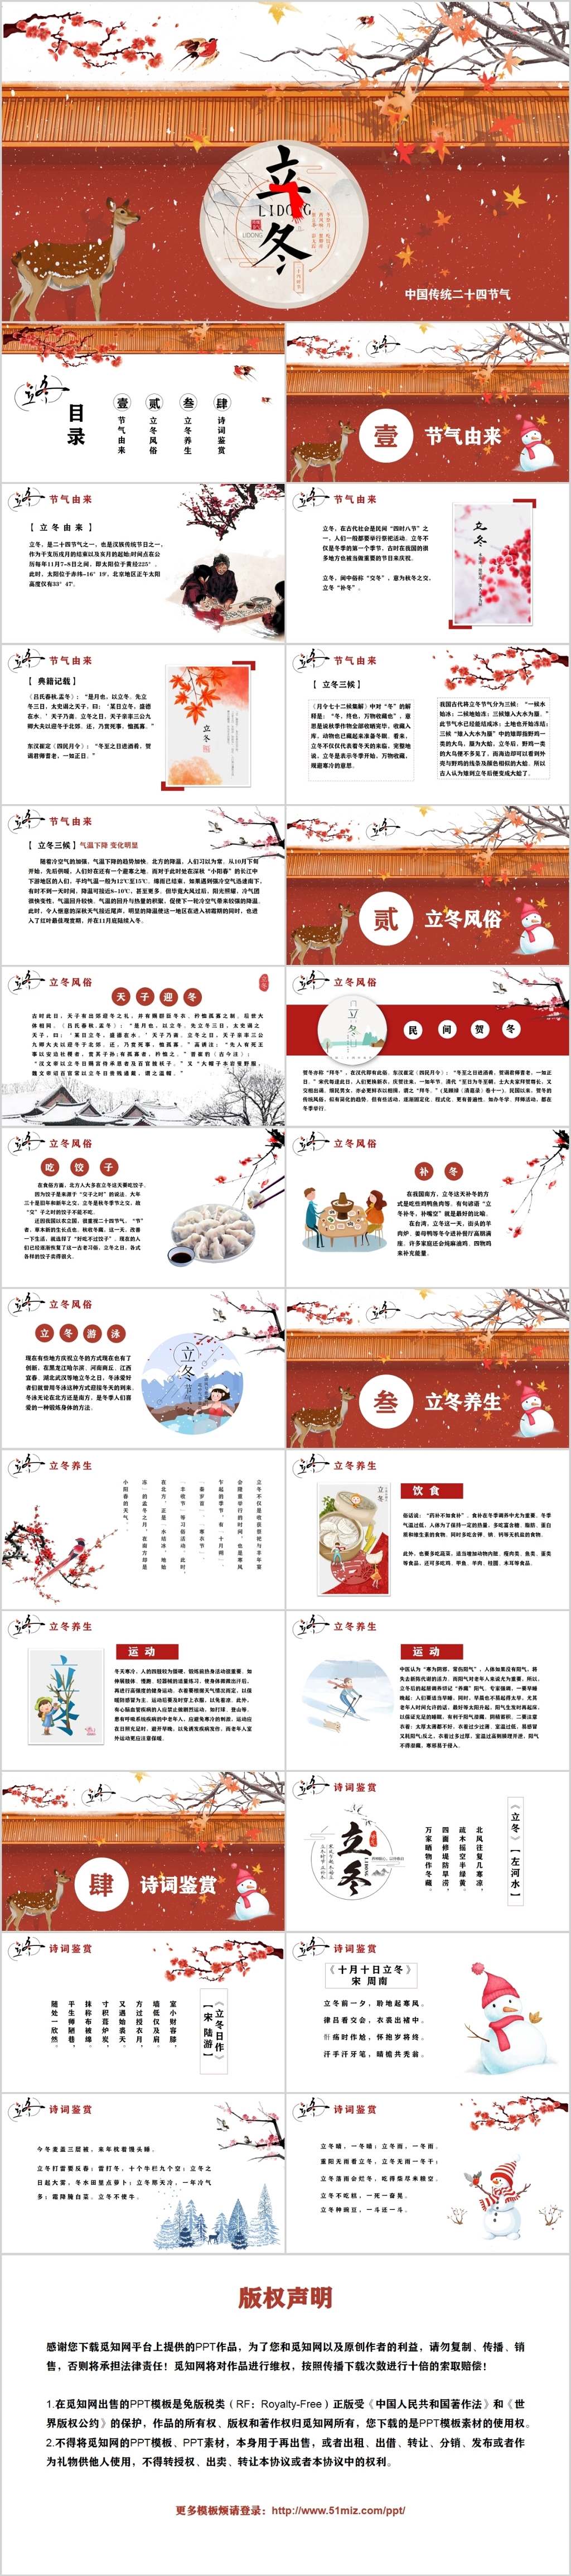 中国风二十四节气立冬中国传统节气PPT动态模板